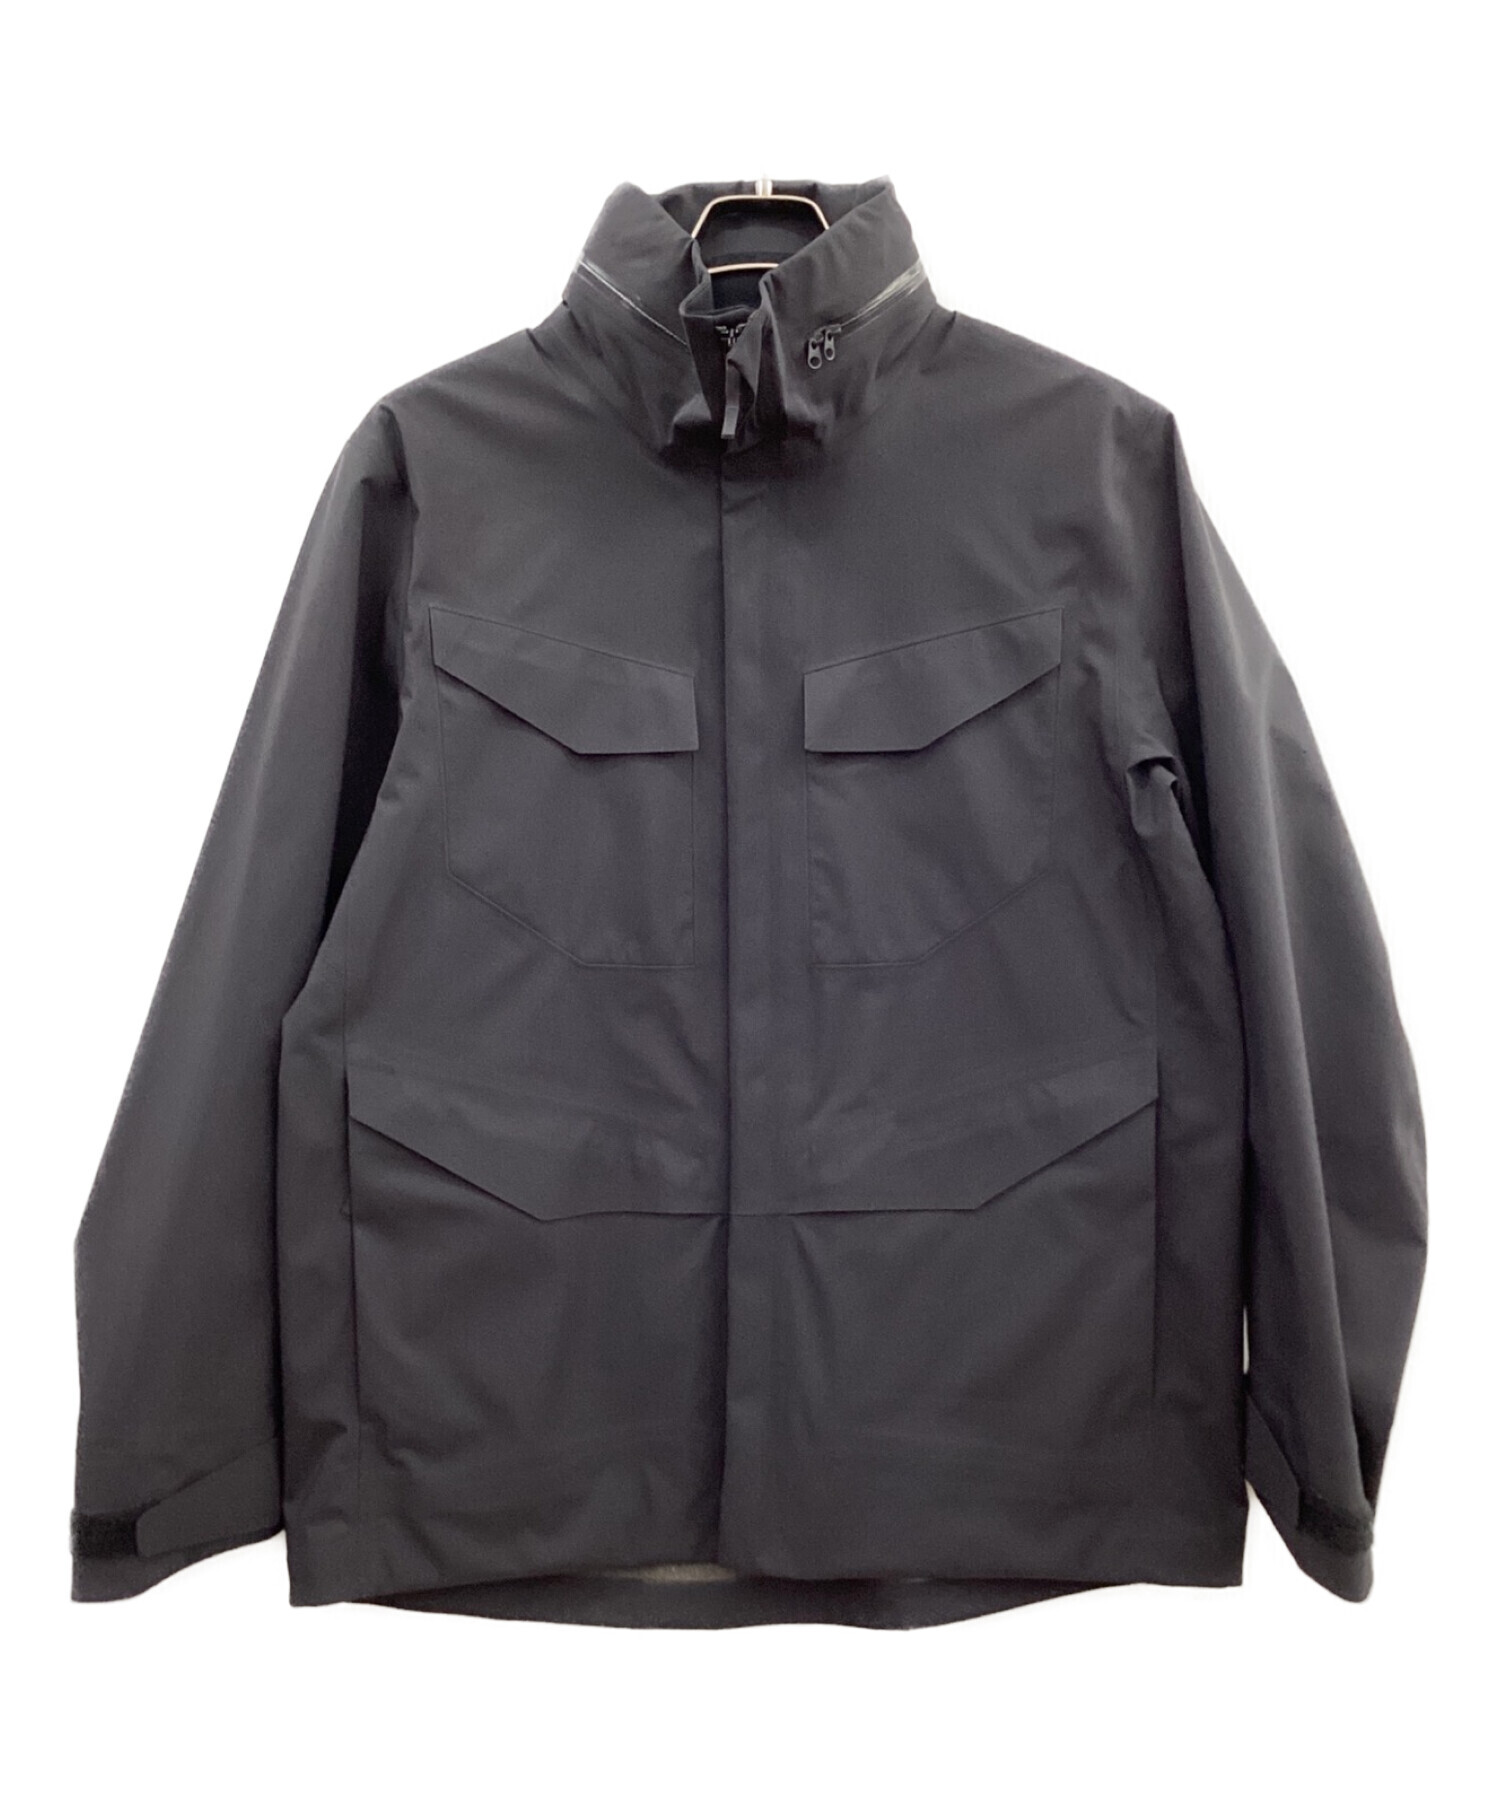 アークテリクス veilance field jacket Sサイズ